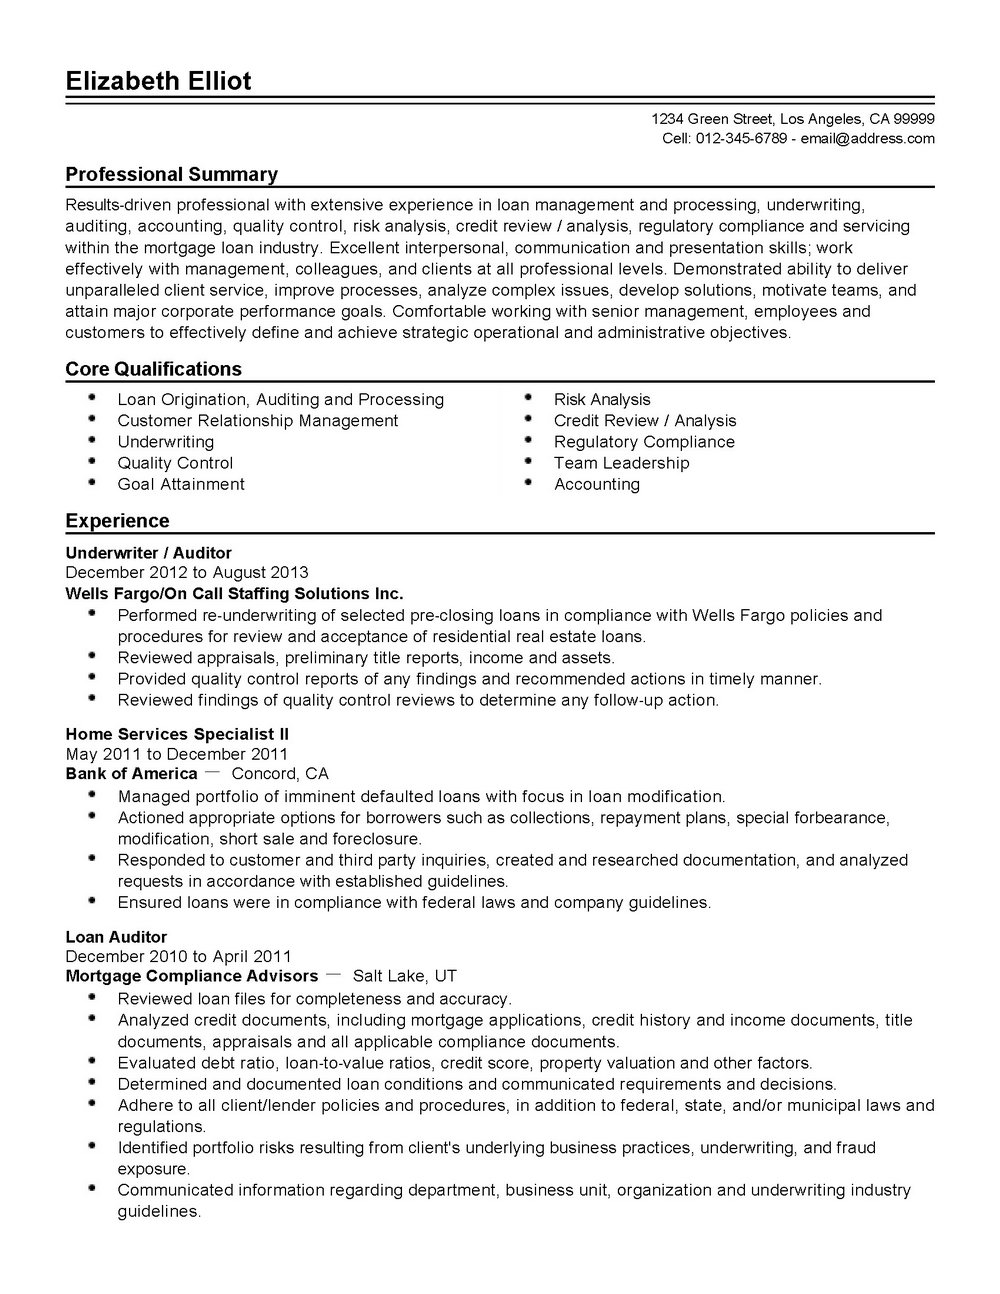 Registered nurse job description essay